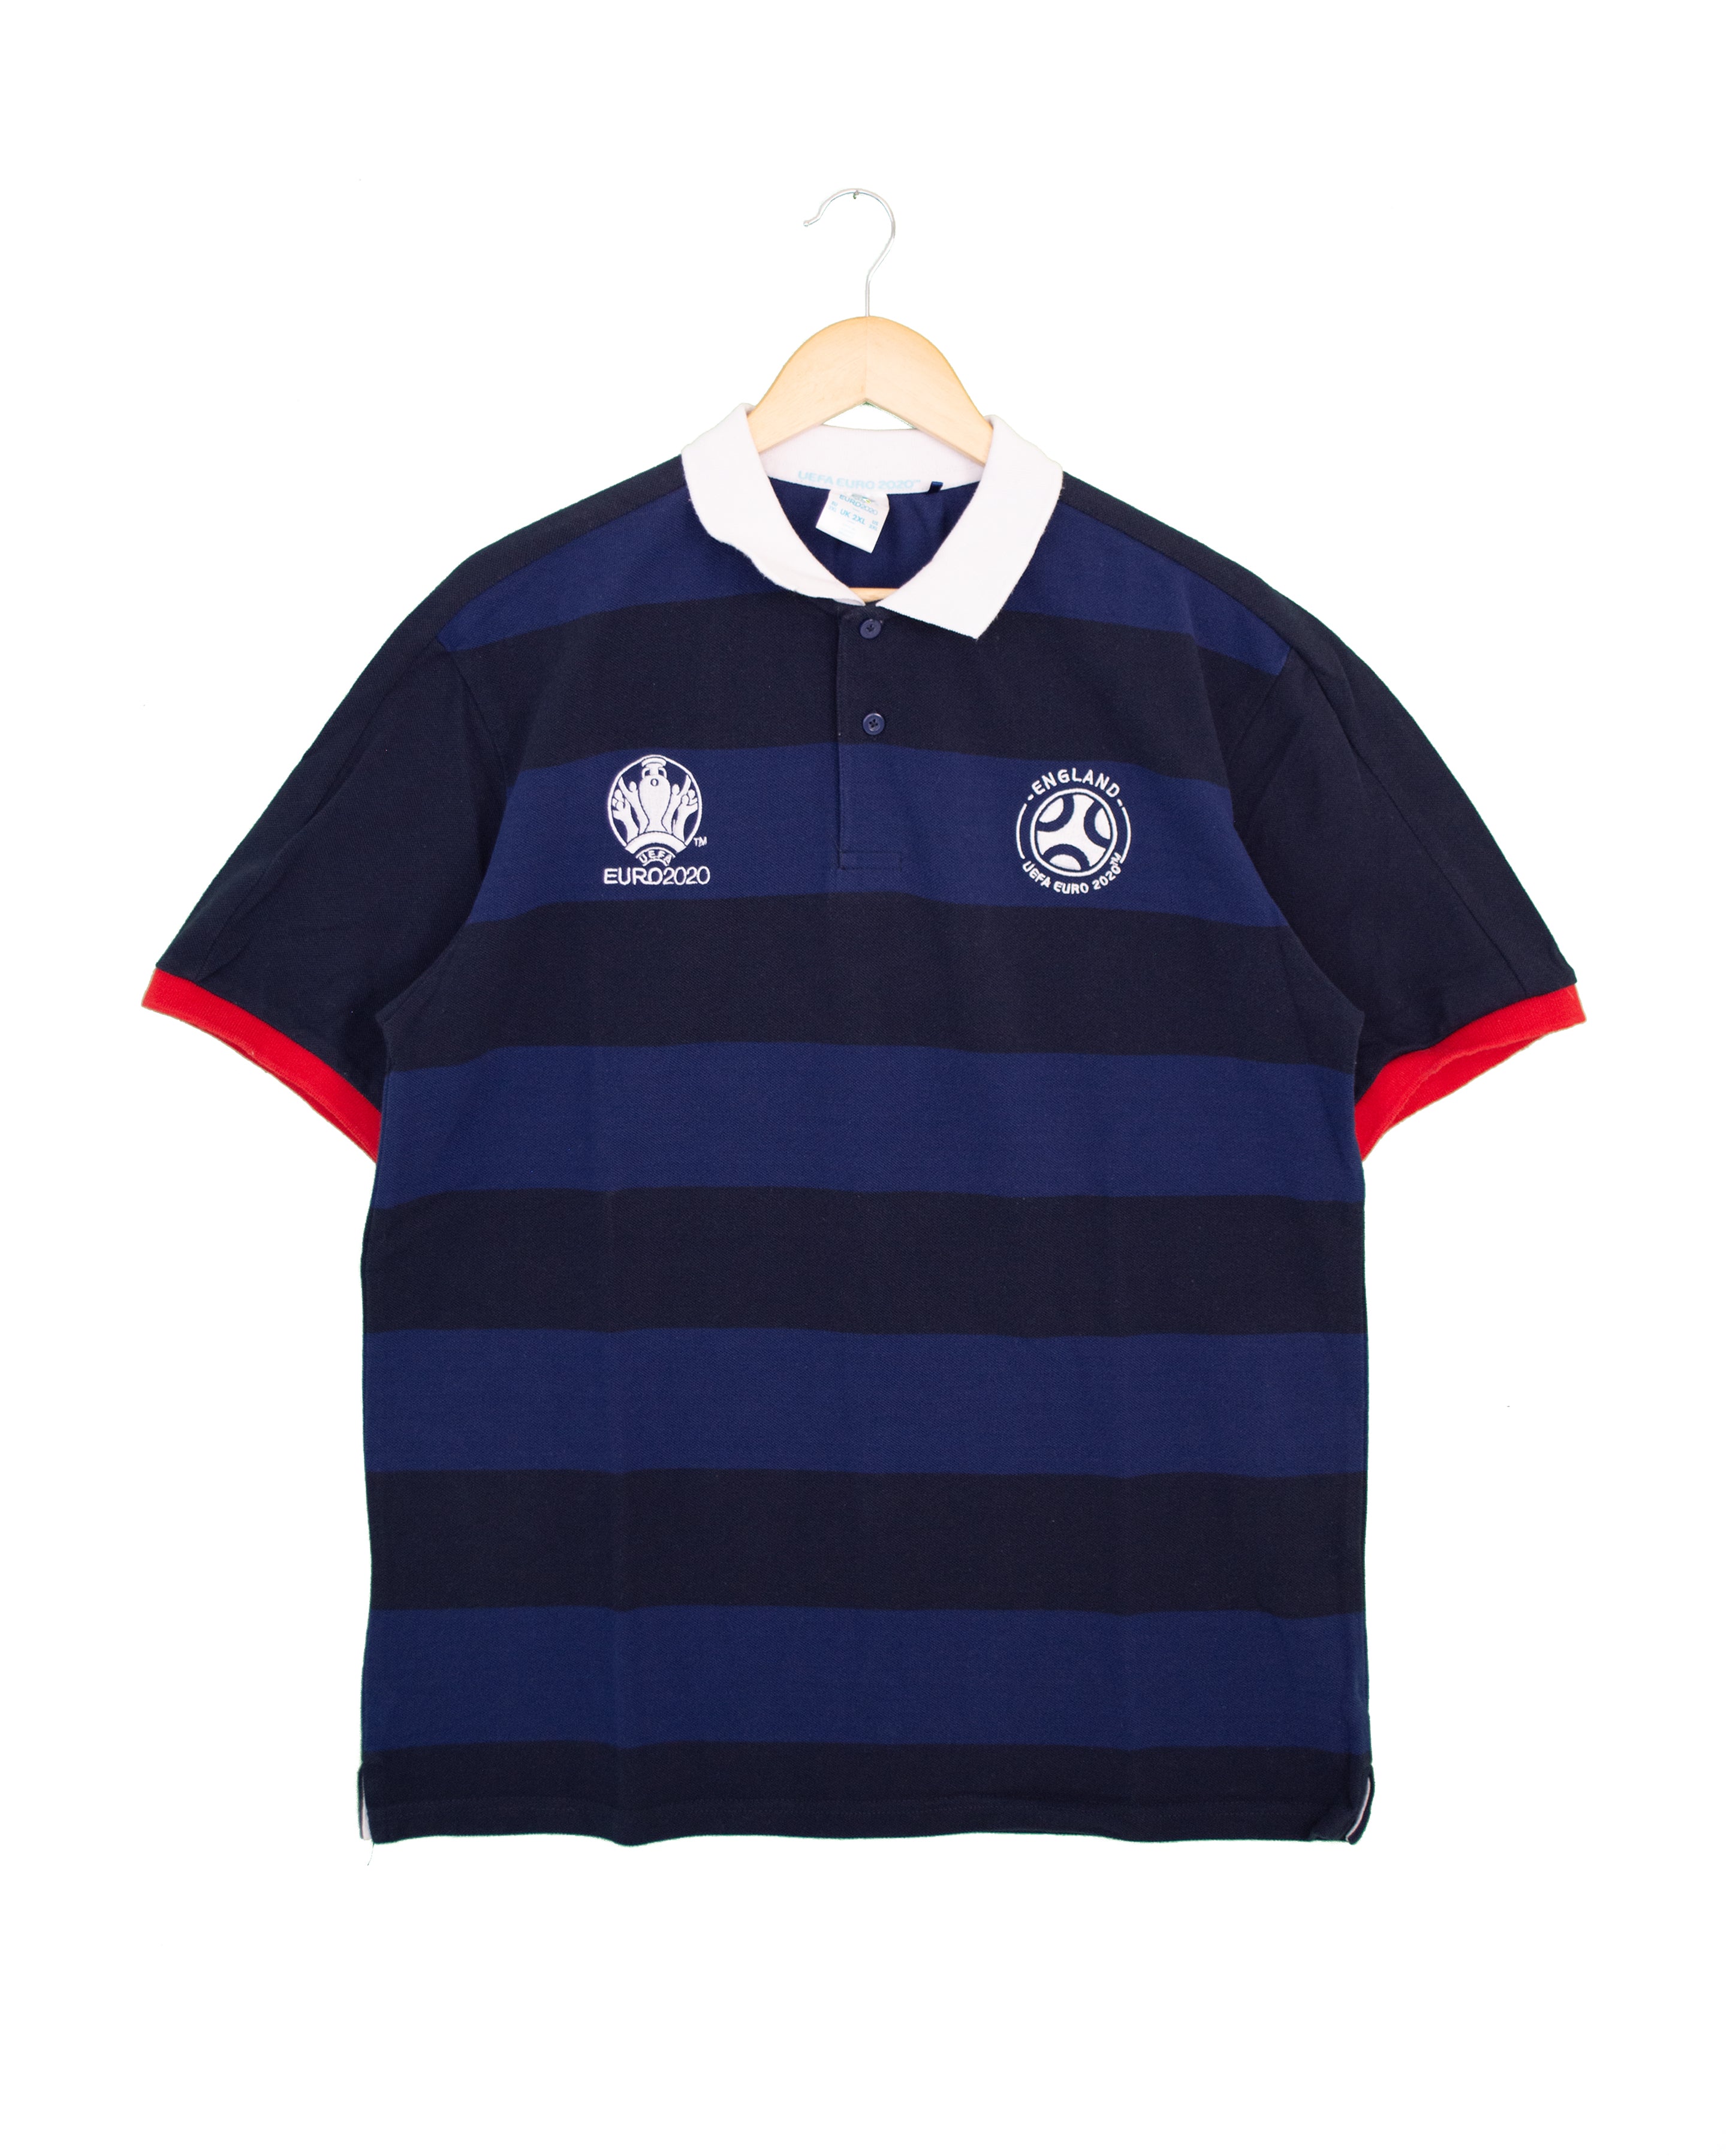 England 'Euro 2020' Polo Shirt - 2XL - #1674